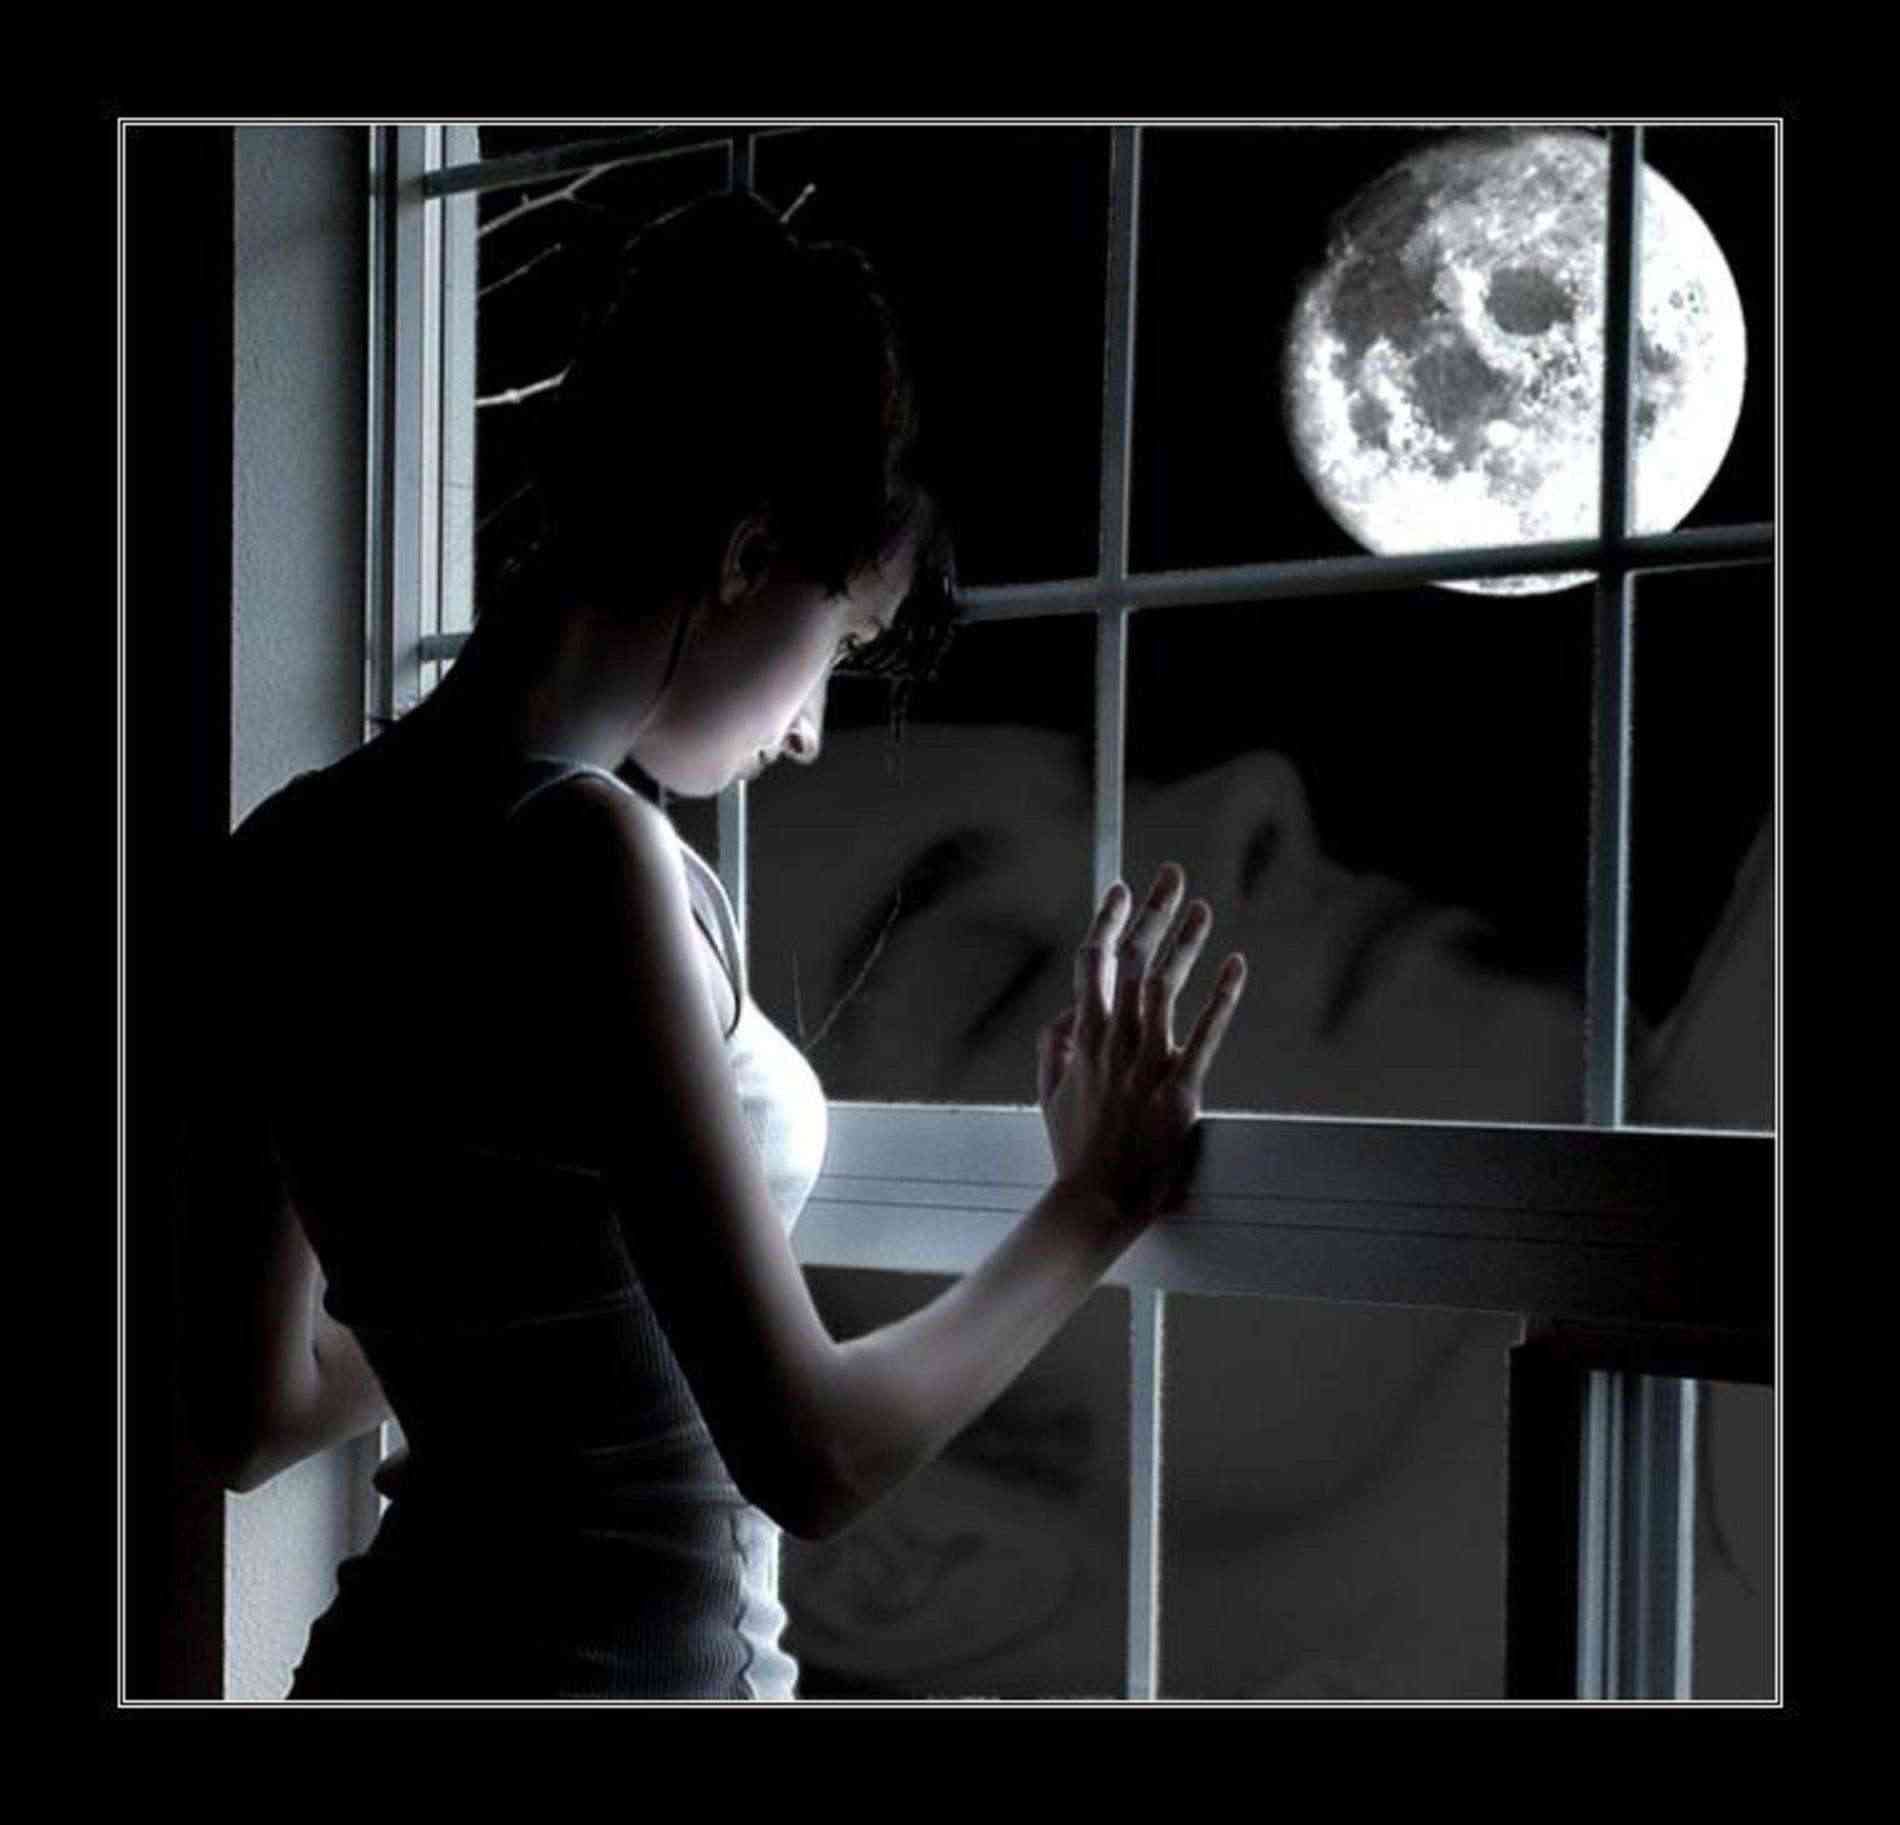 Незнакомец наблюдает. Луна в окне. Девушка ждет у окна. Женщина в полумраке. Женщина ночь одиночество.